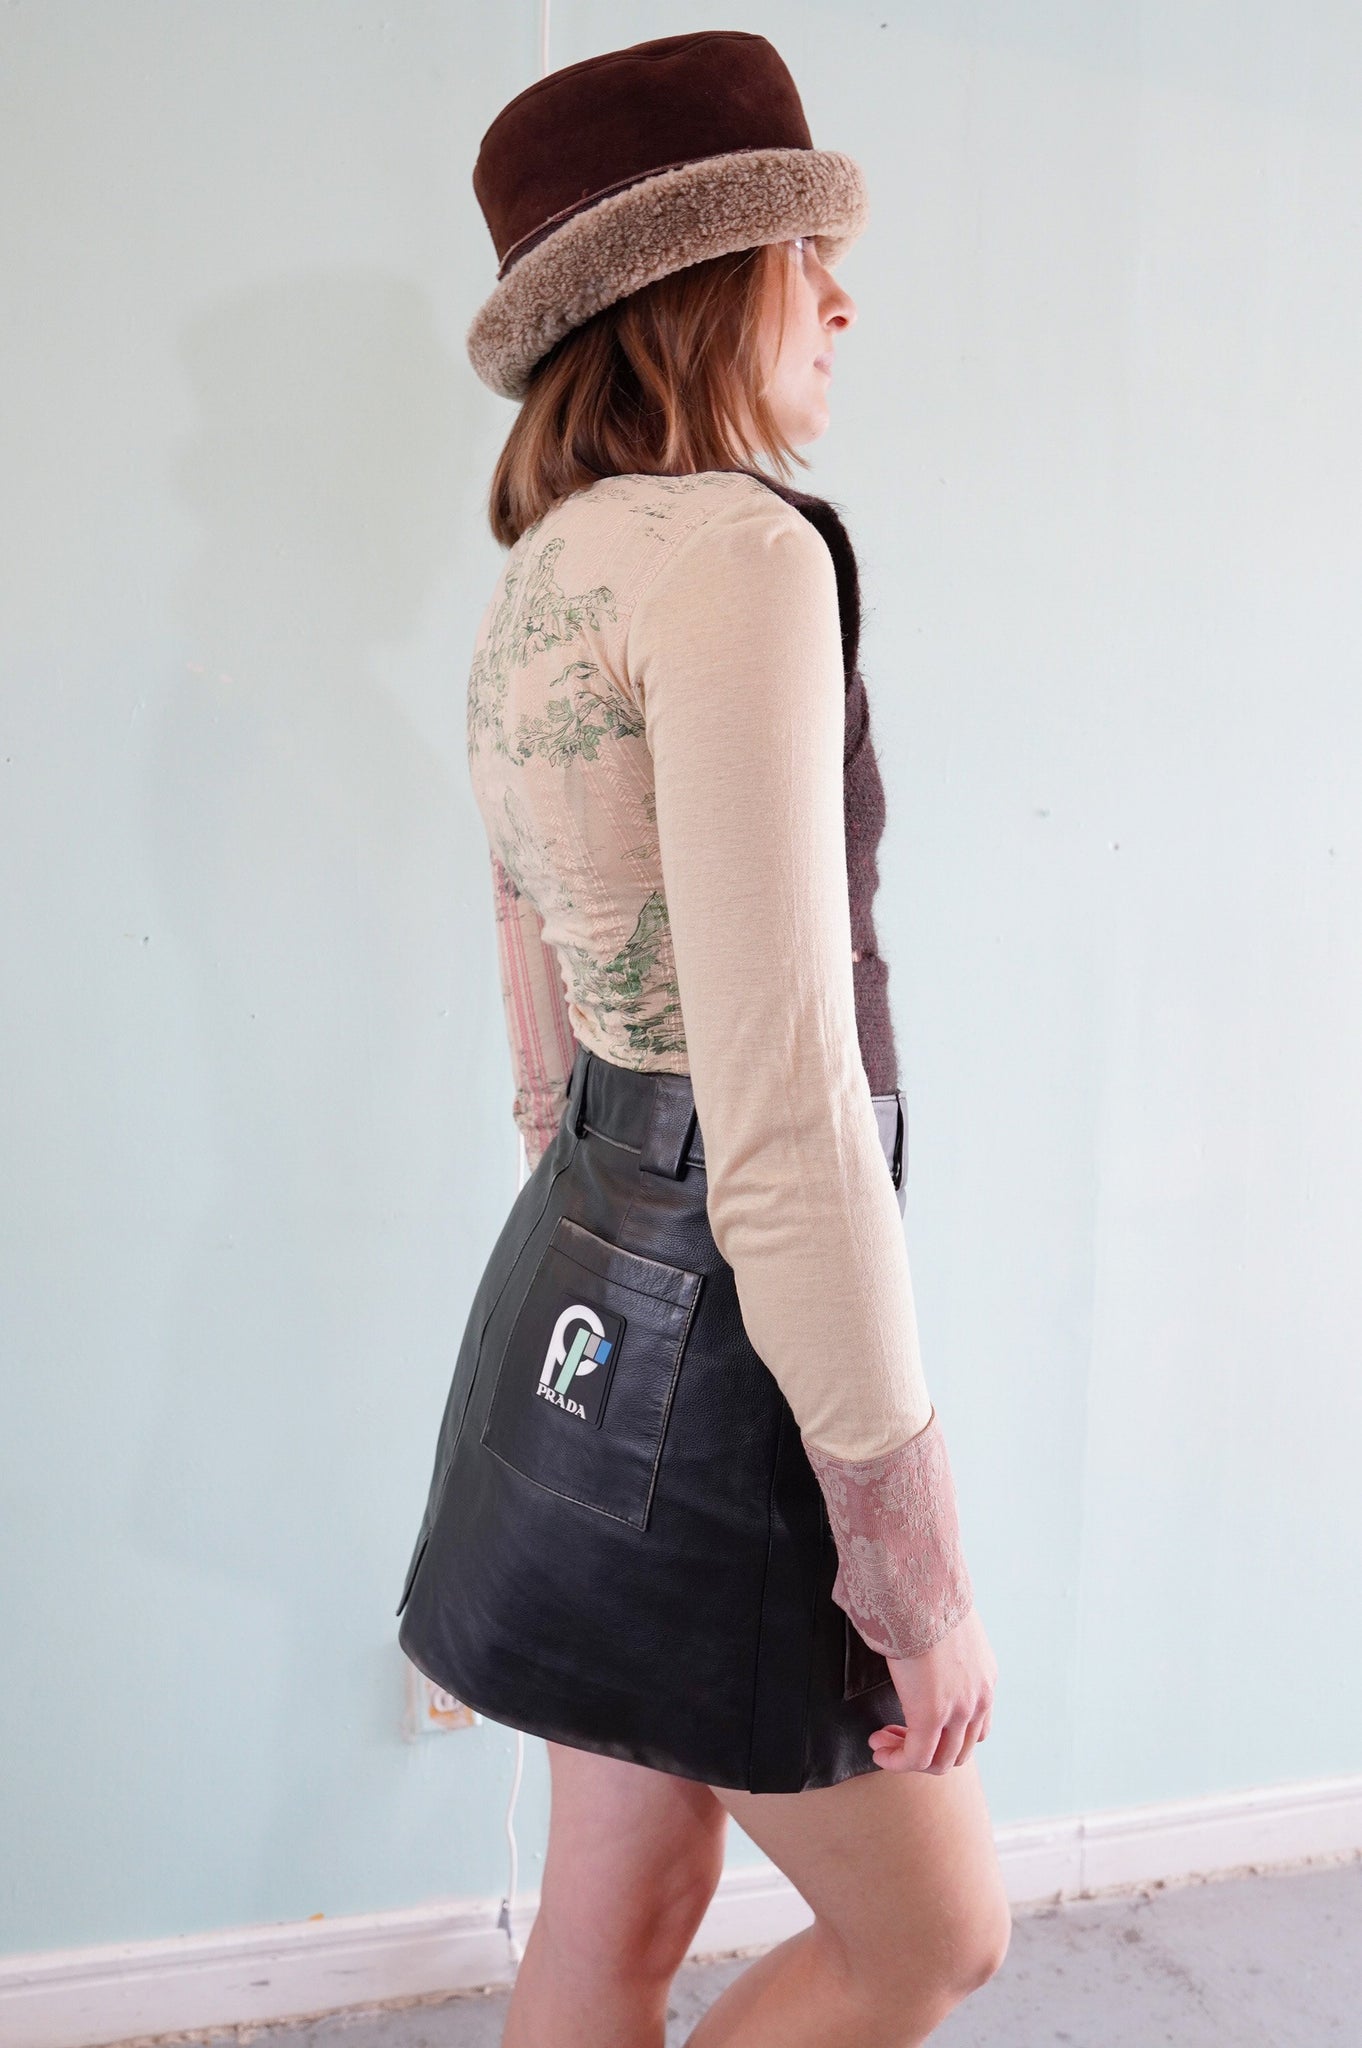 Prada F/W 2018 leather skirt - S/M